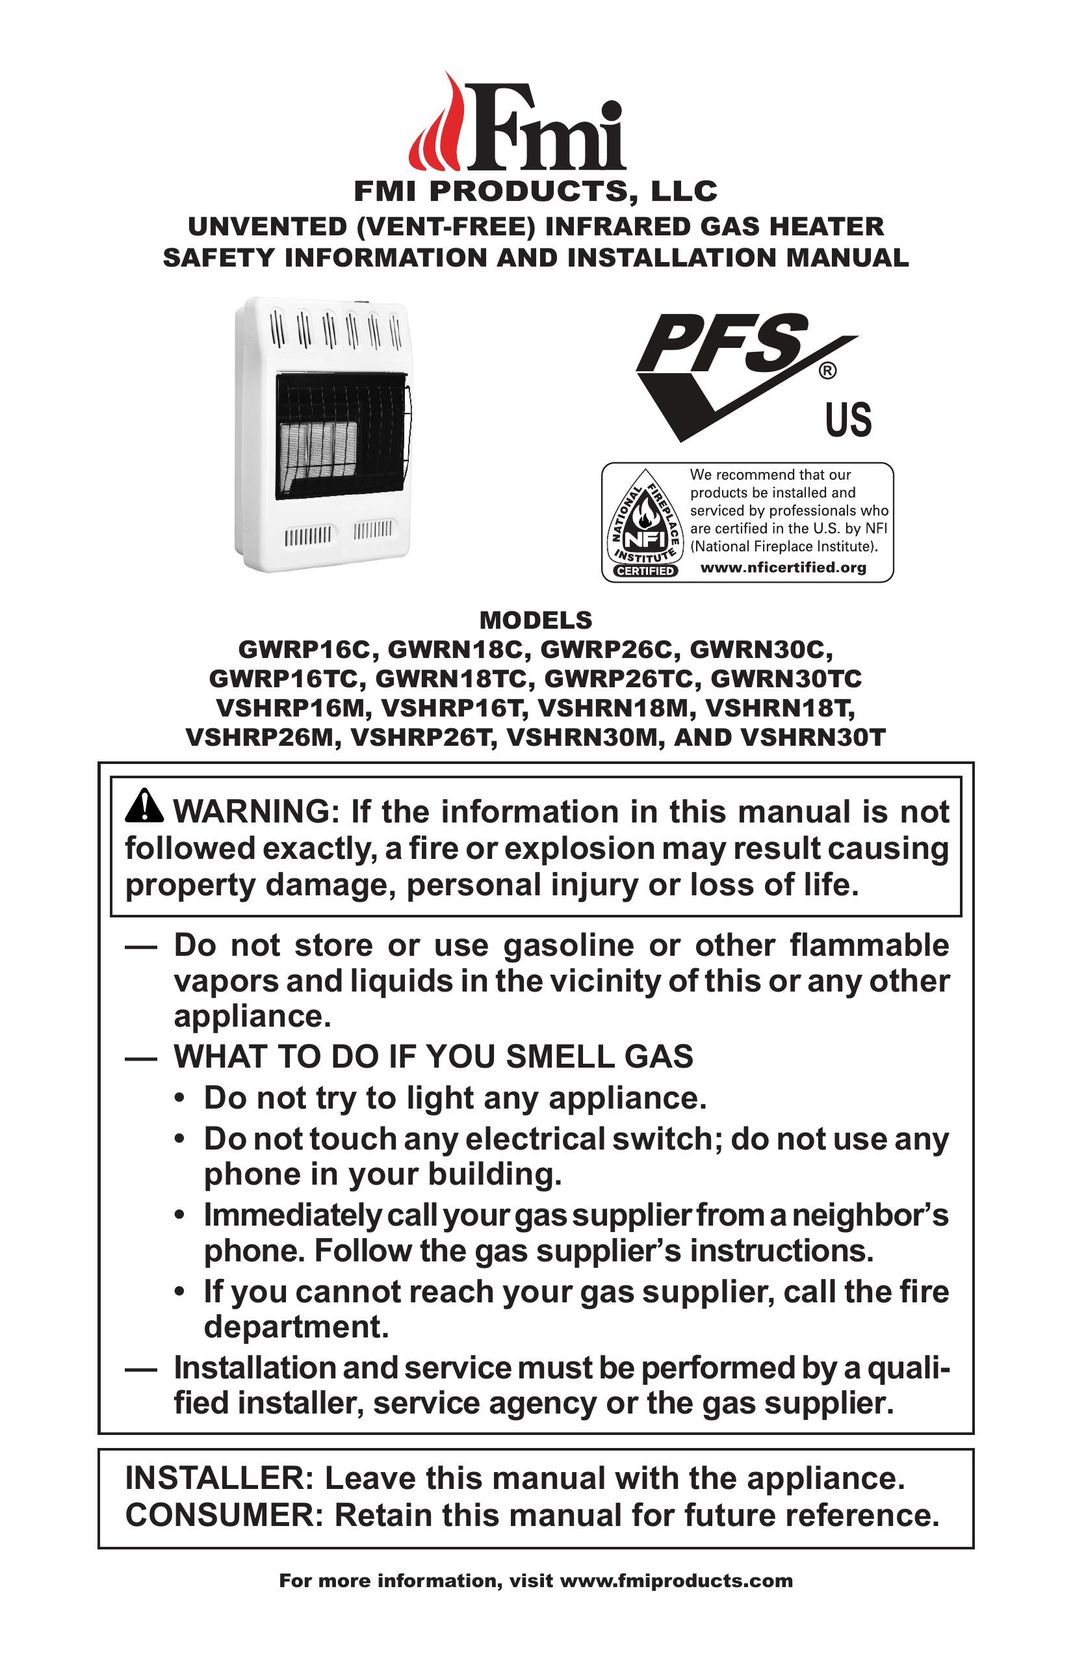 FMI GWRP26C Gas Heater User Manual